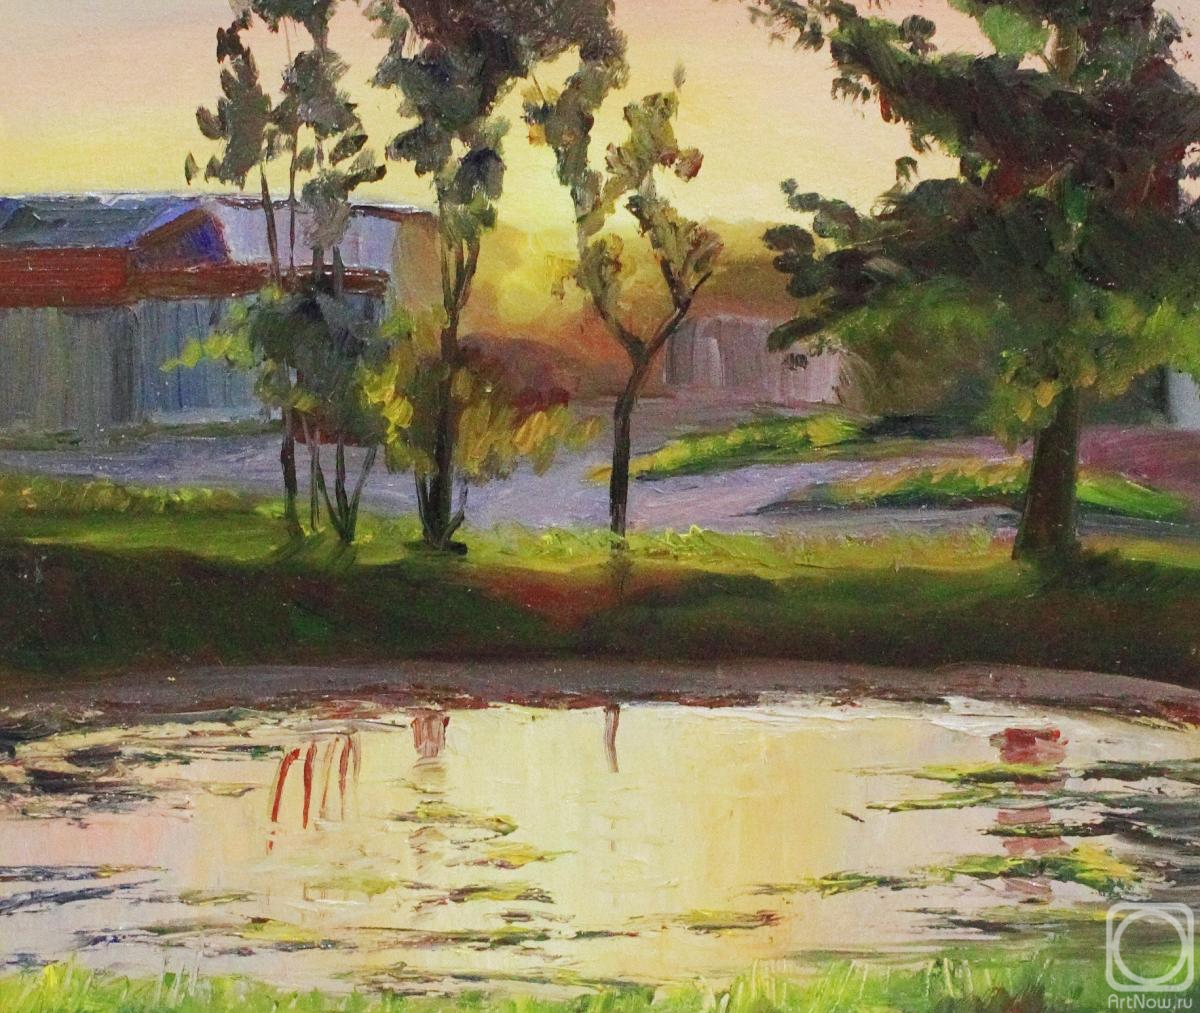 Fyodorova-Popova Tatyana. Pond at the house